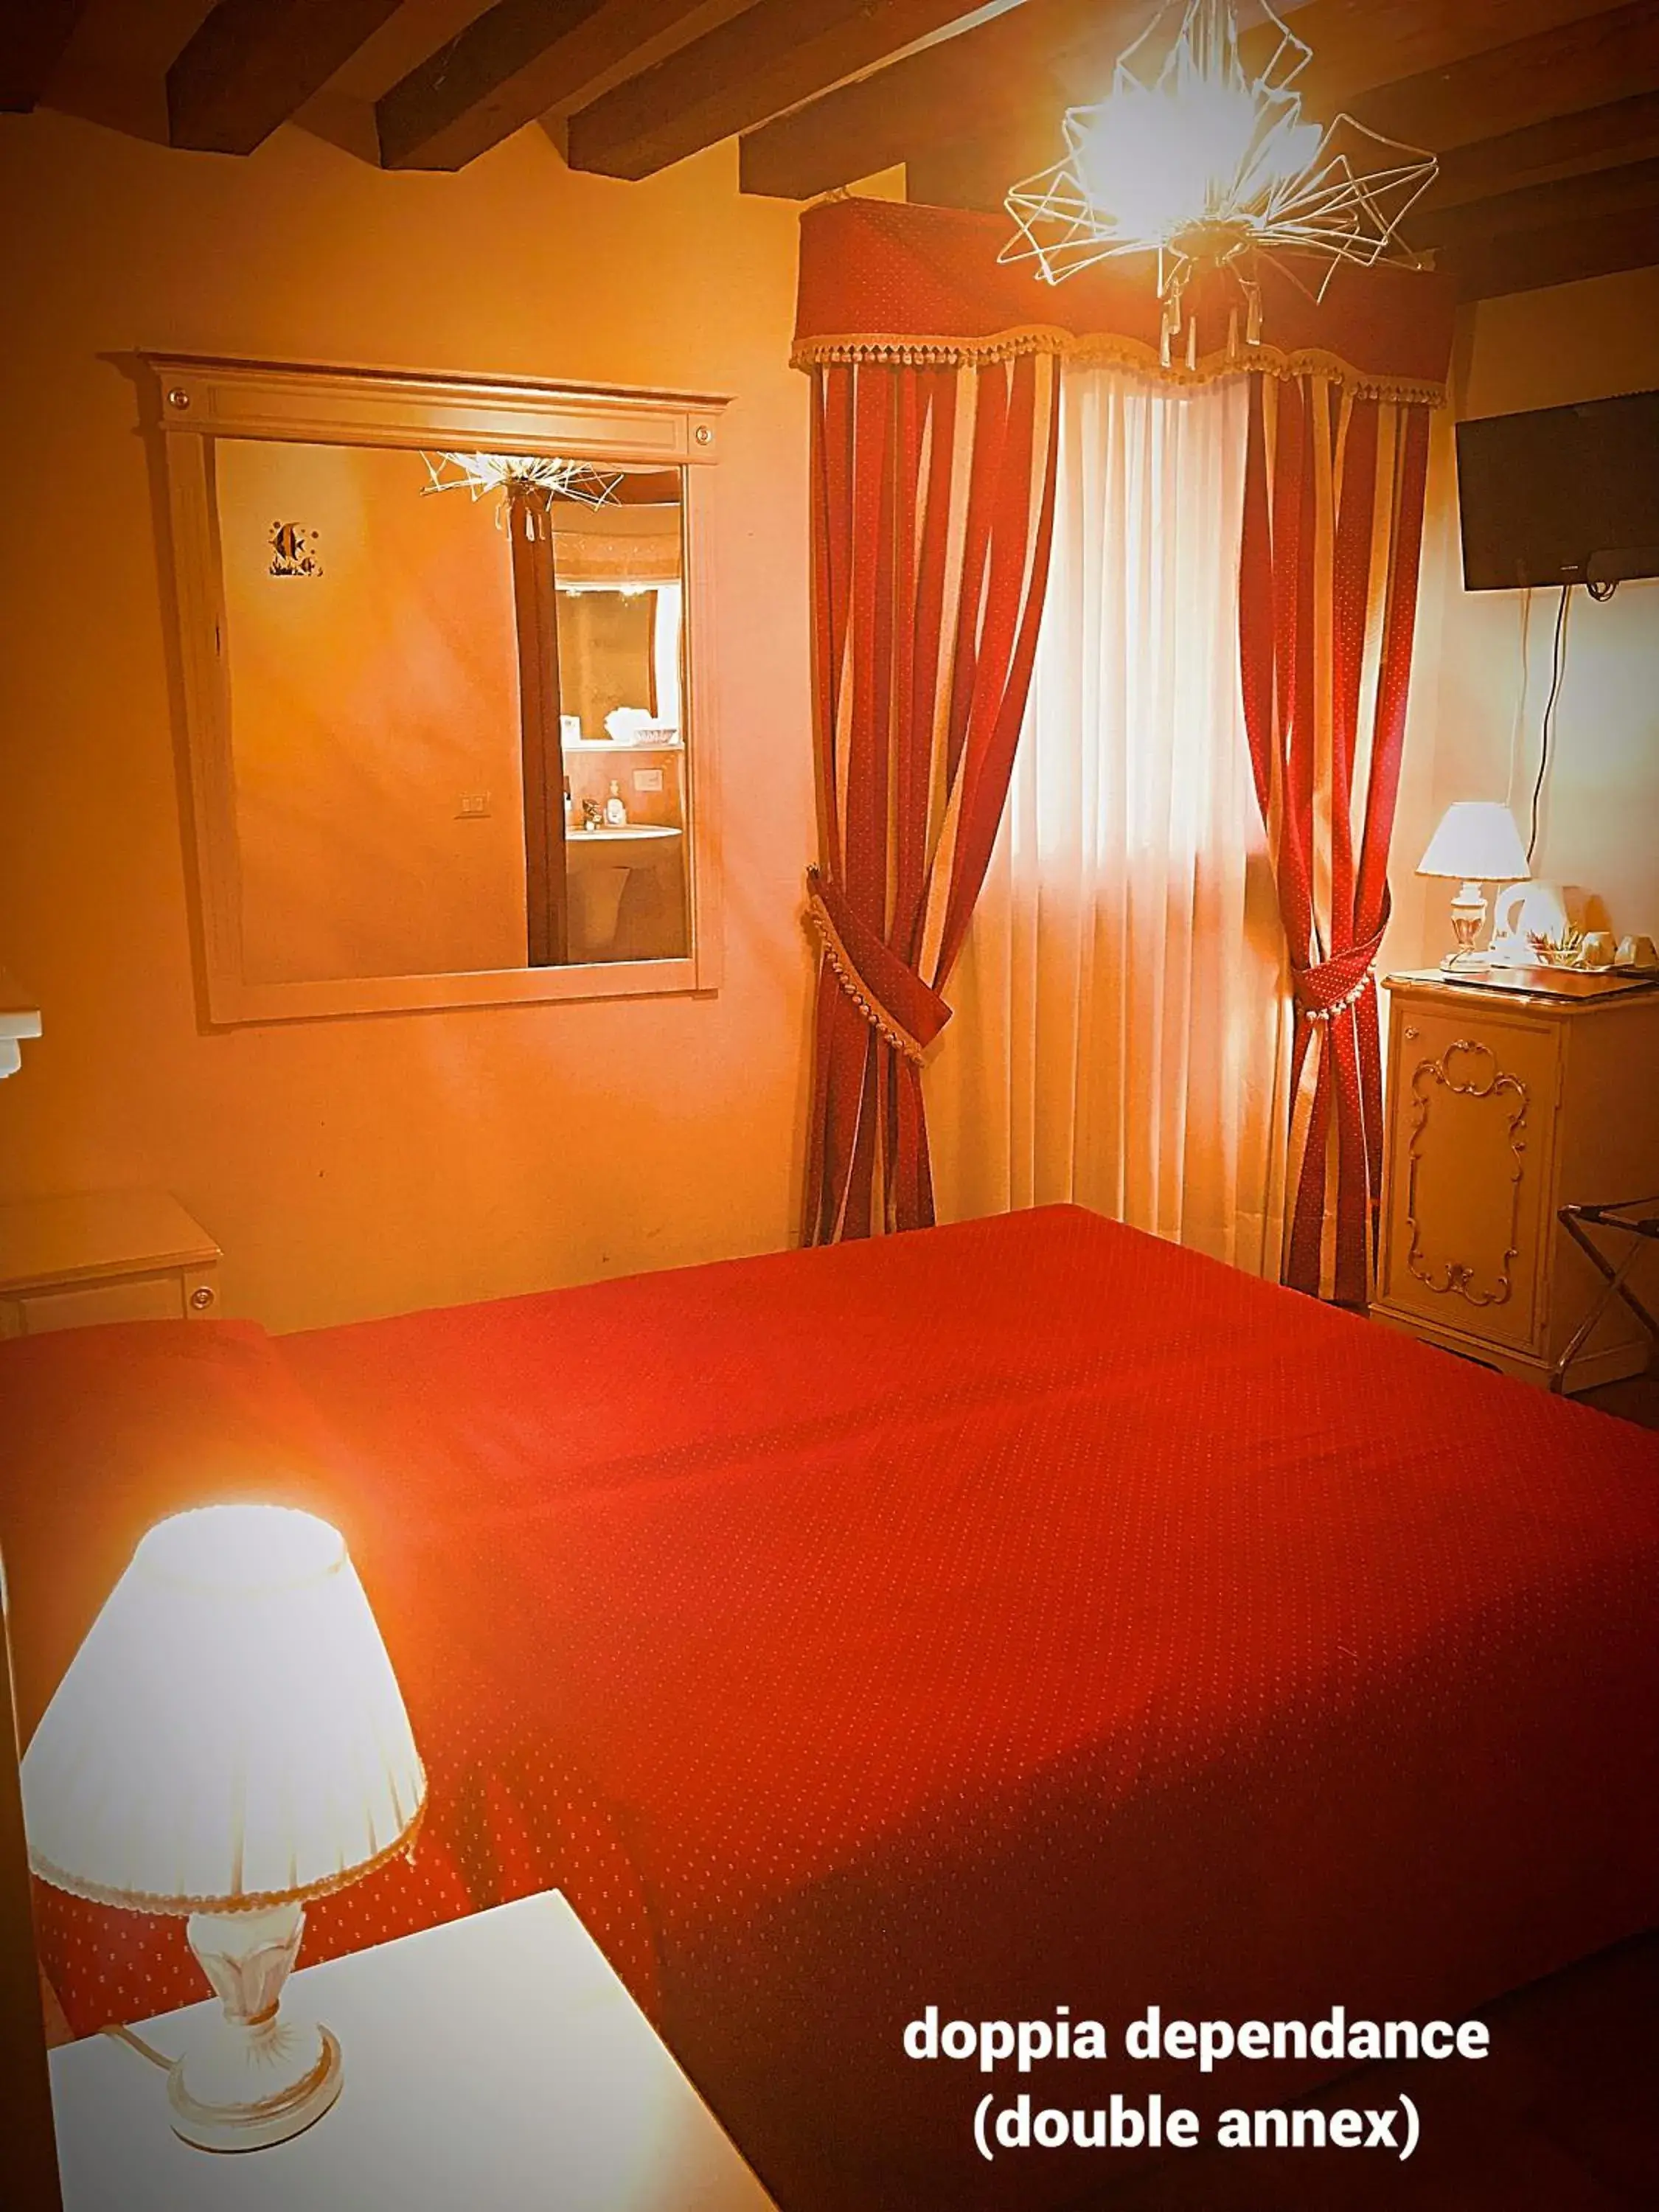 Bed in Hotel San Luca Venezia